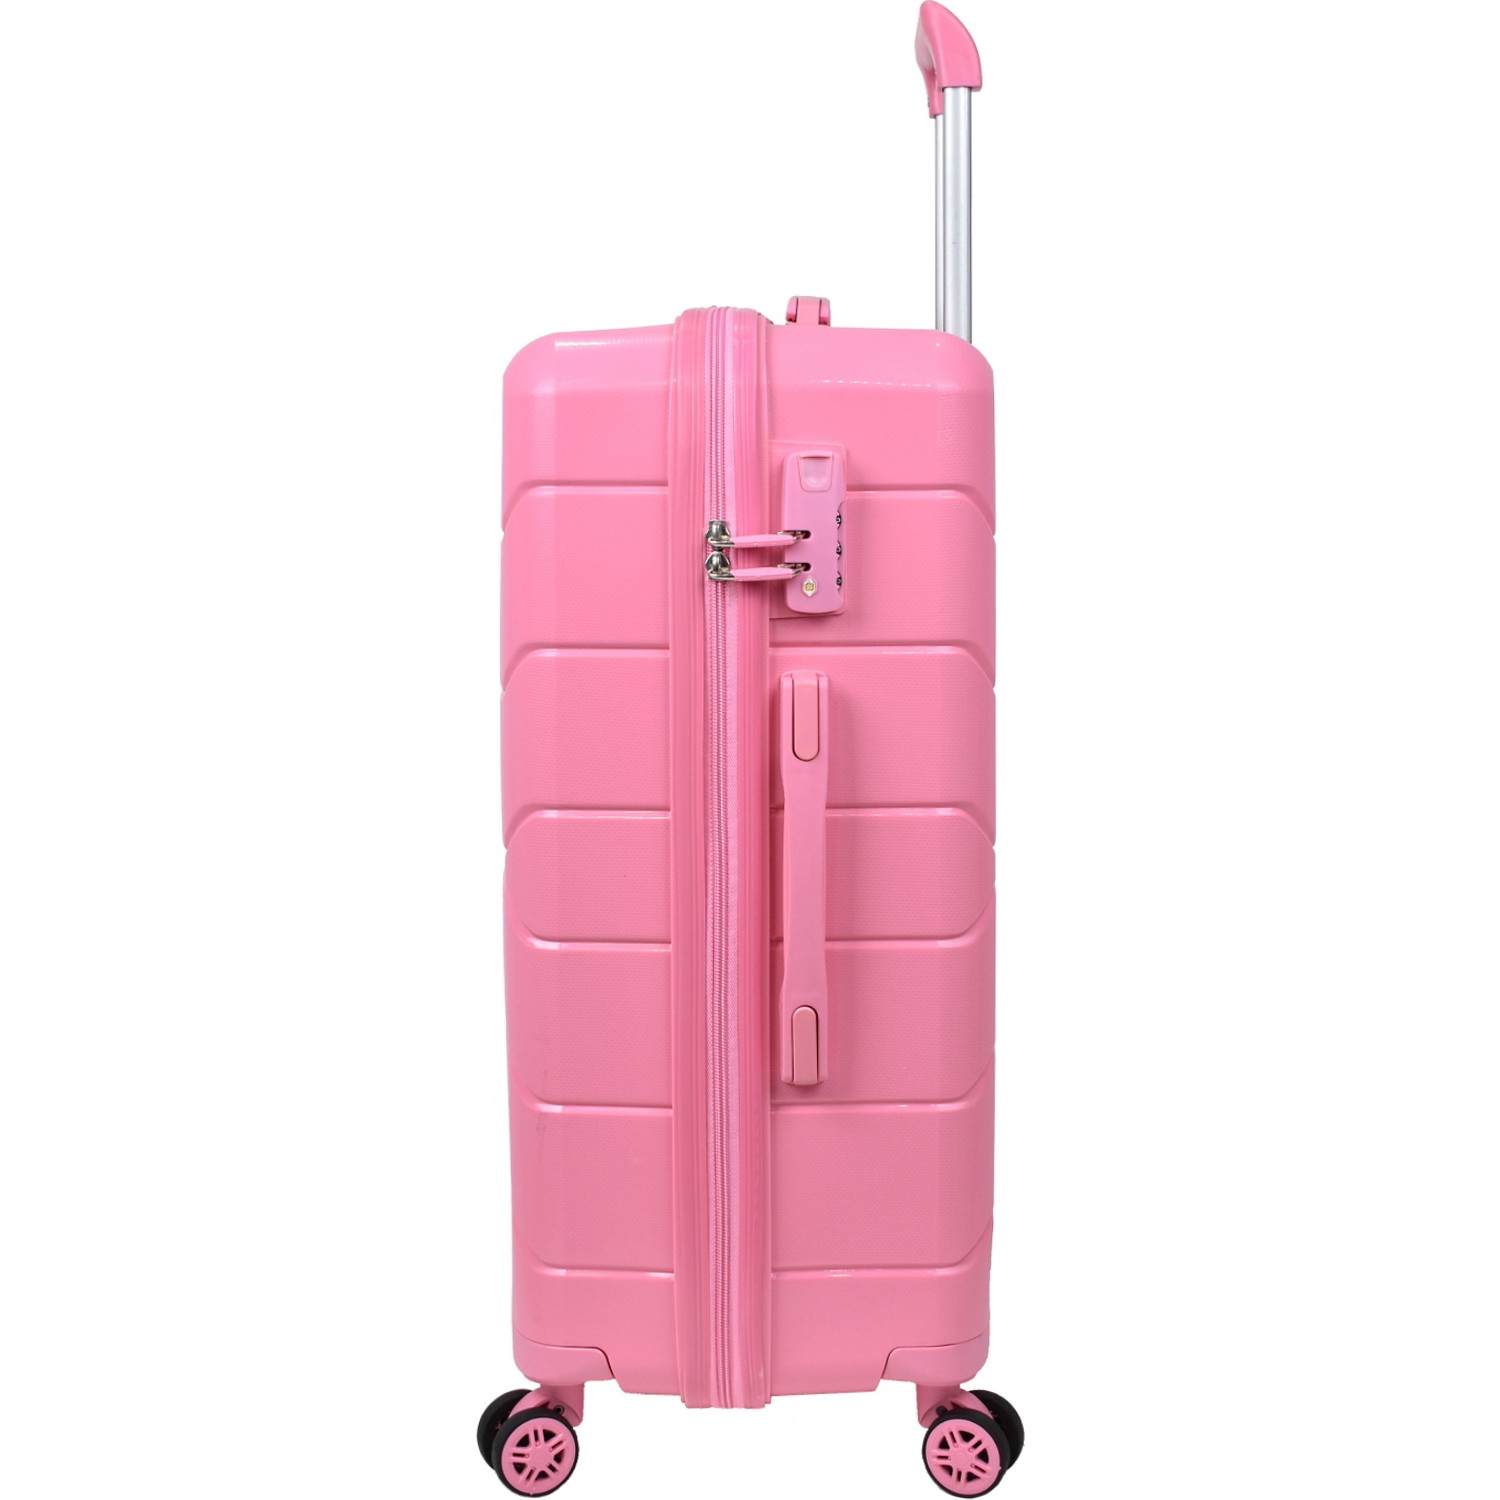 Средний чемодан из полипропилена MCS V366 M PINK! Для 18 кг! - 4